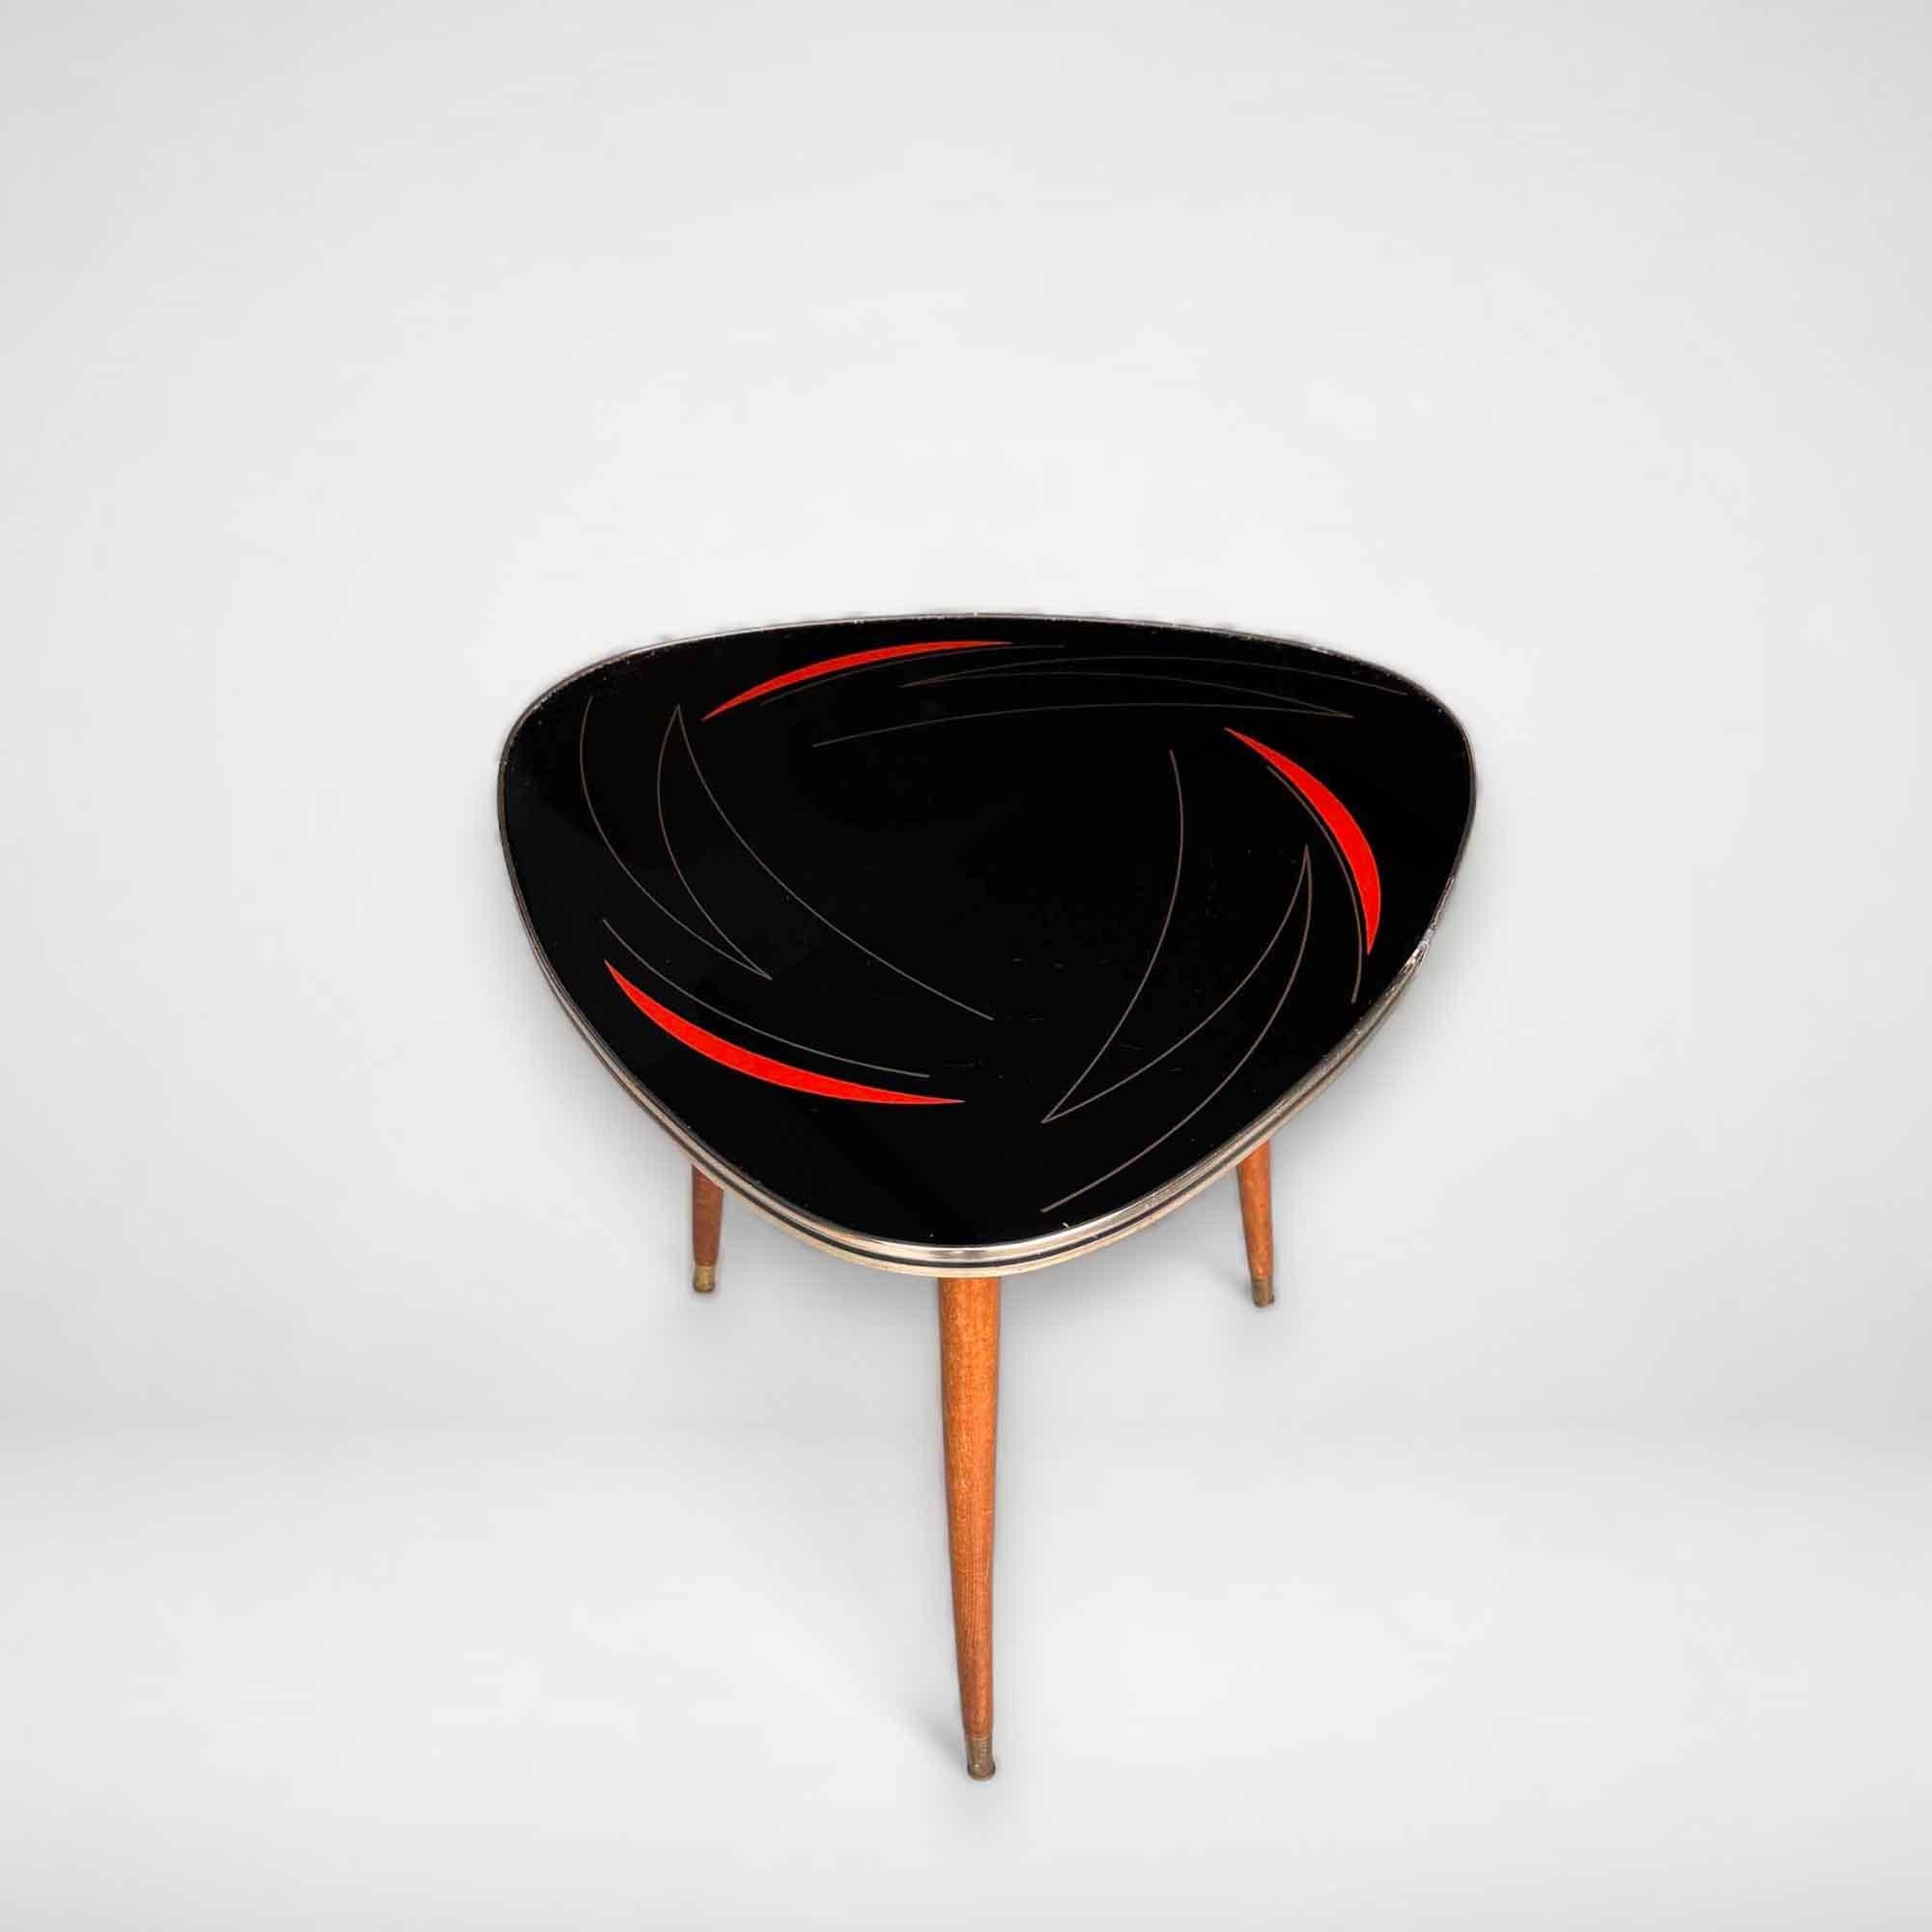 Une belle table basse des années 50 avec une illustration en or et rouge sur fond noir. Cette table vintage présente le bord doré typique et repose sur 3 solides pieds en bois. Les jambes peuvent être tournées vers l'extérieur. Le style de cette